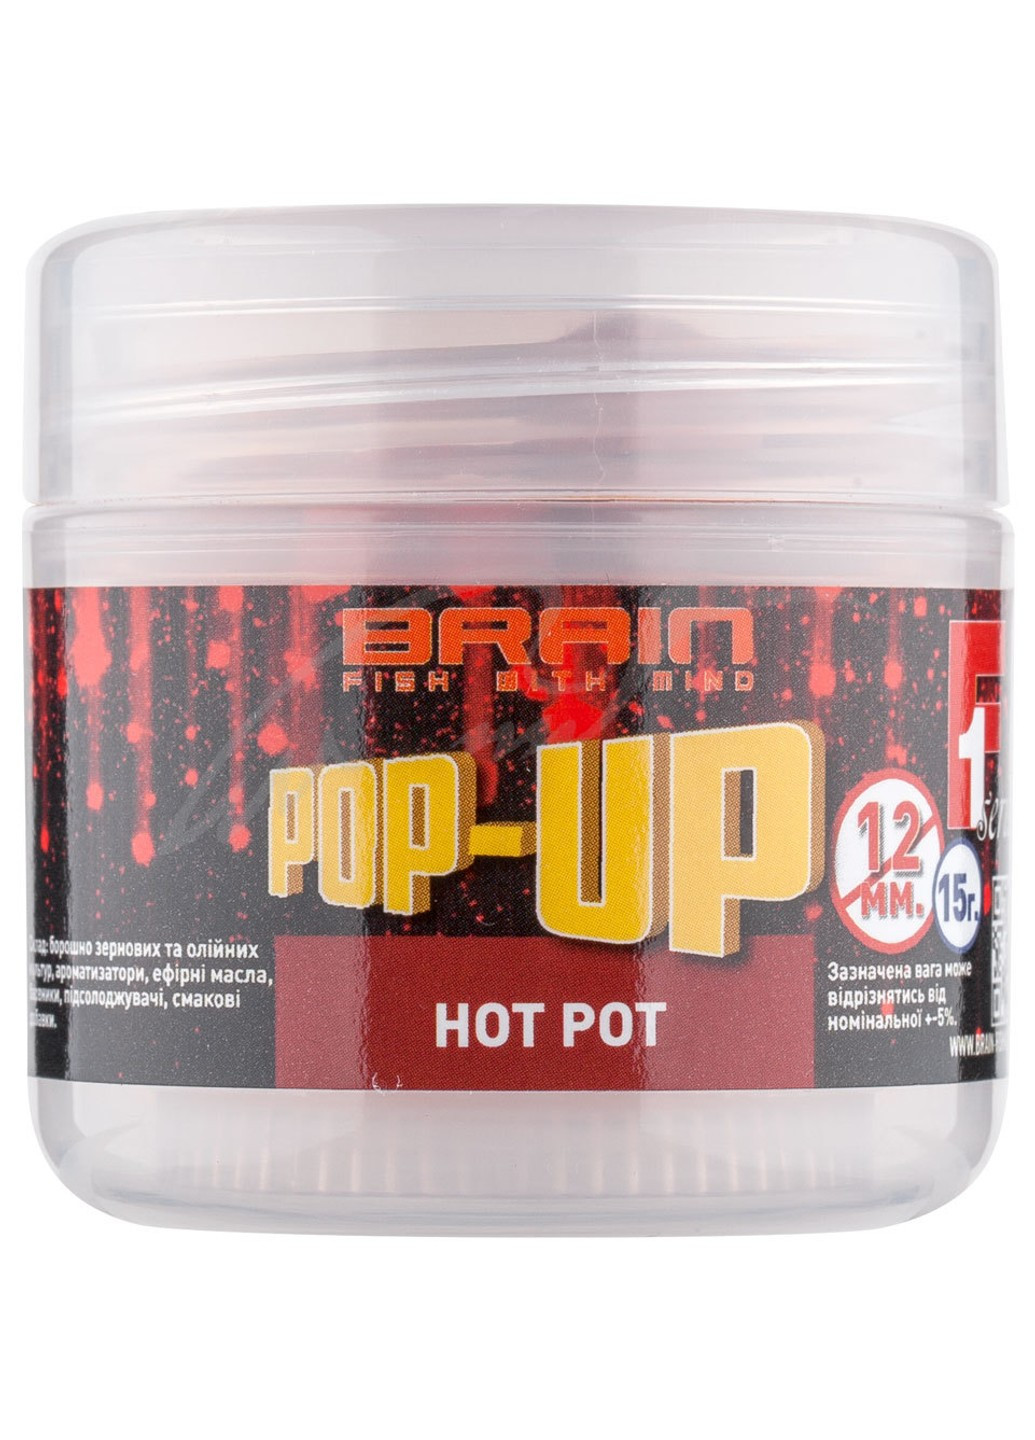 Бойли Pop-Up F1 Hot pot (спеції) 12 мм 15 g Brain (252650700)